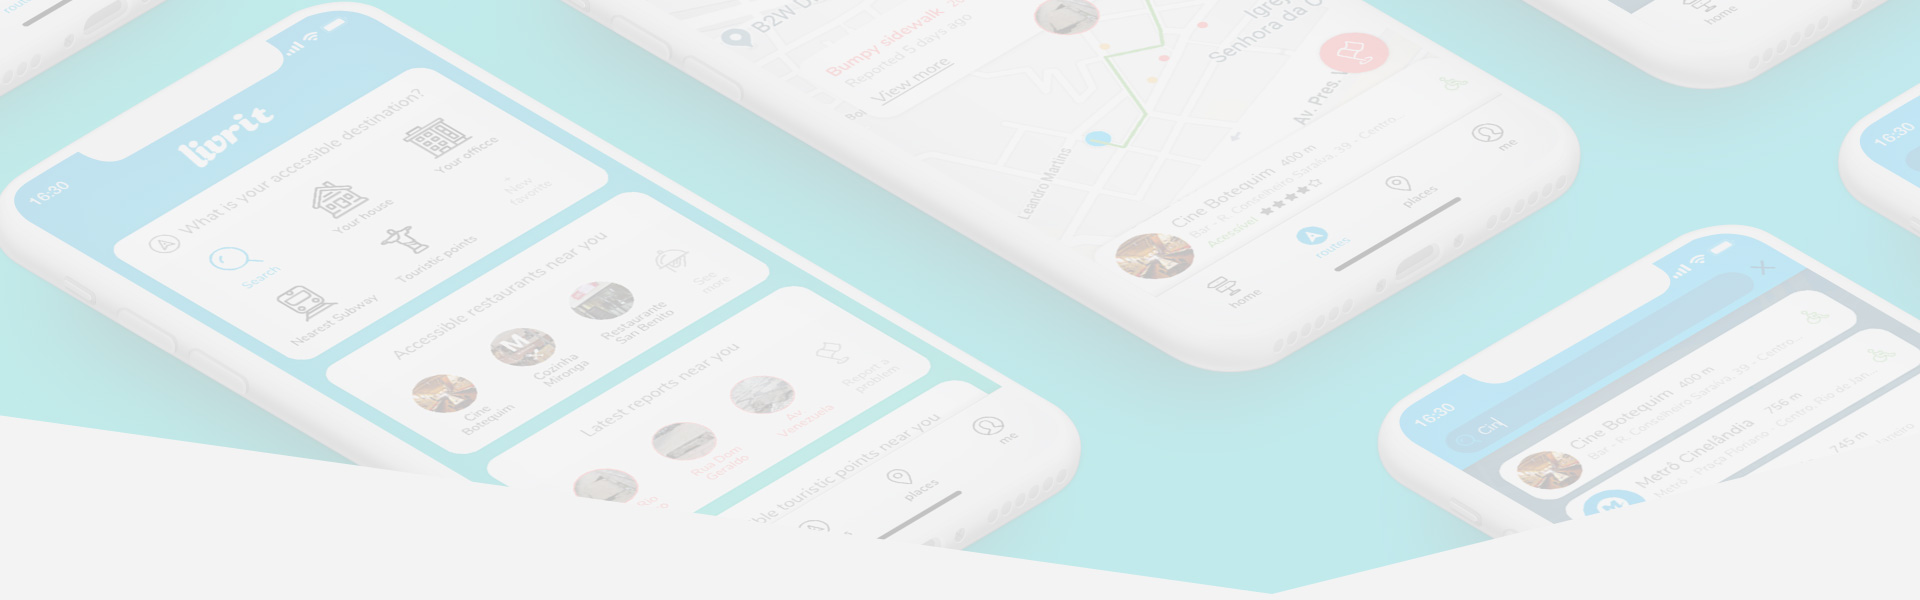 Livrit Startup Mobile App Cover